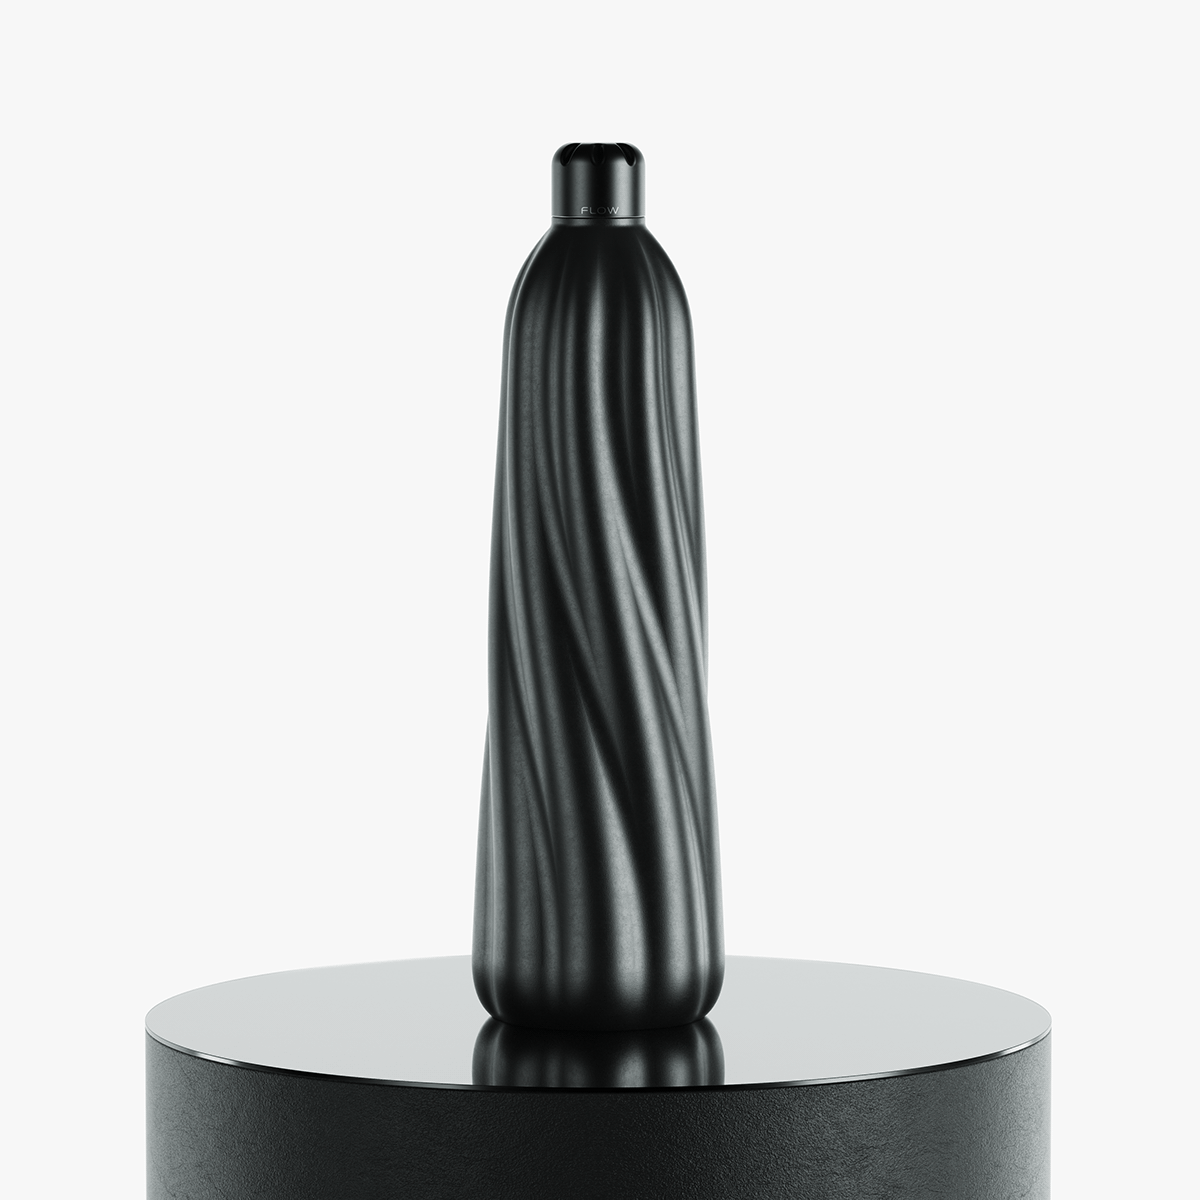 3D design industrial design  product product design  Render bottle water industrial keyshot